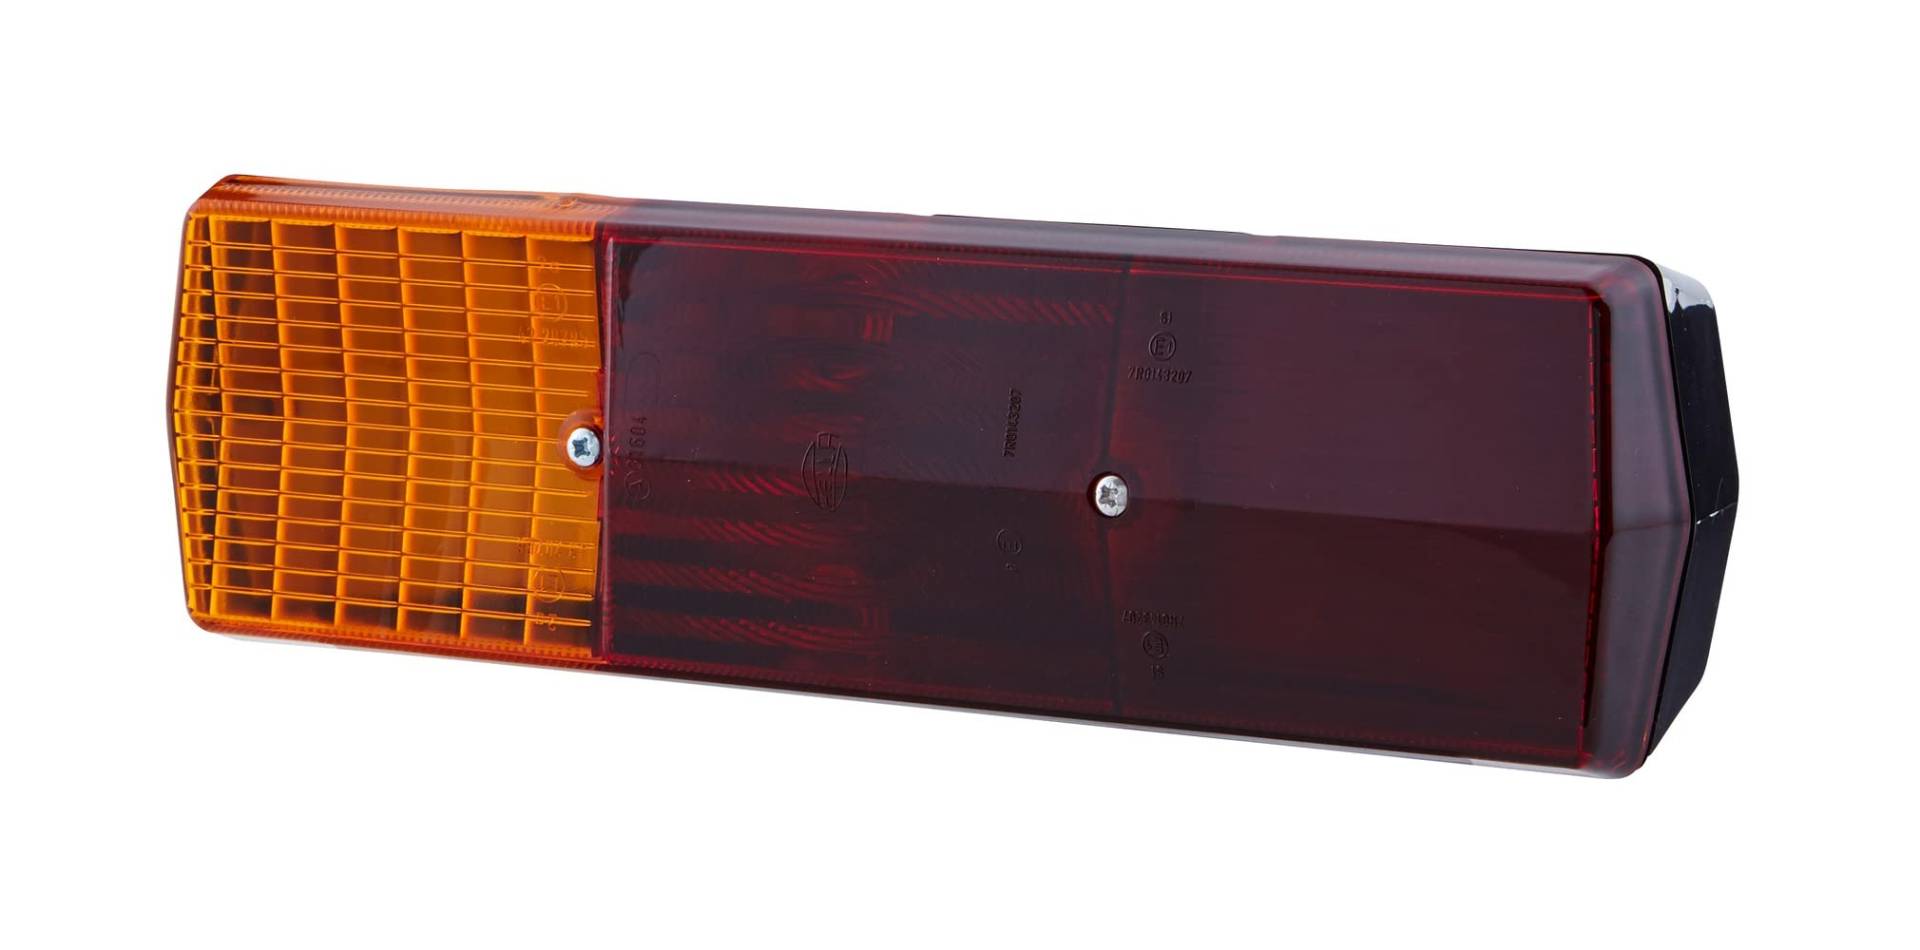 HELLA Rückleuchte - Glühlampe - Anhänger Beleuchtung - 12V / 24V - Anbau/geschraubt - ECE - Lichtscheibenfarbe: rot/gelb - Stecker: Flachstecker - rechts - Menge: 1 - 2SD 001 688-141 von Hella